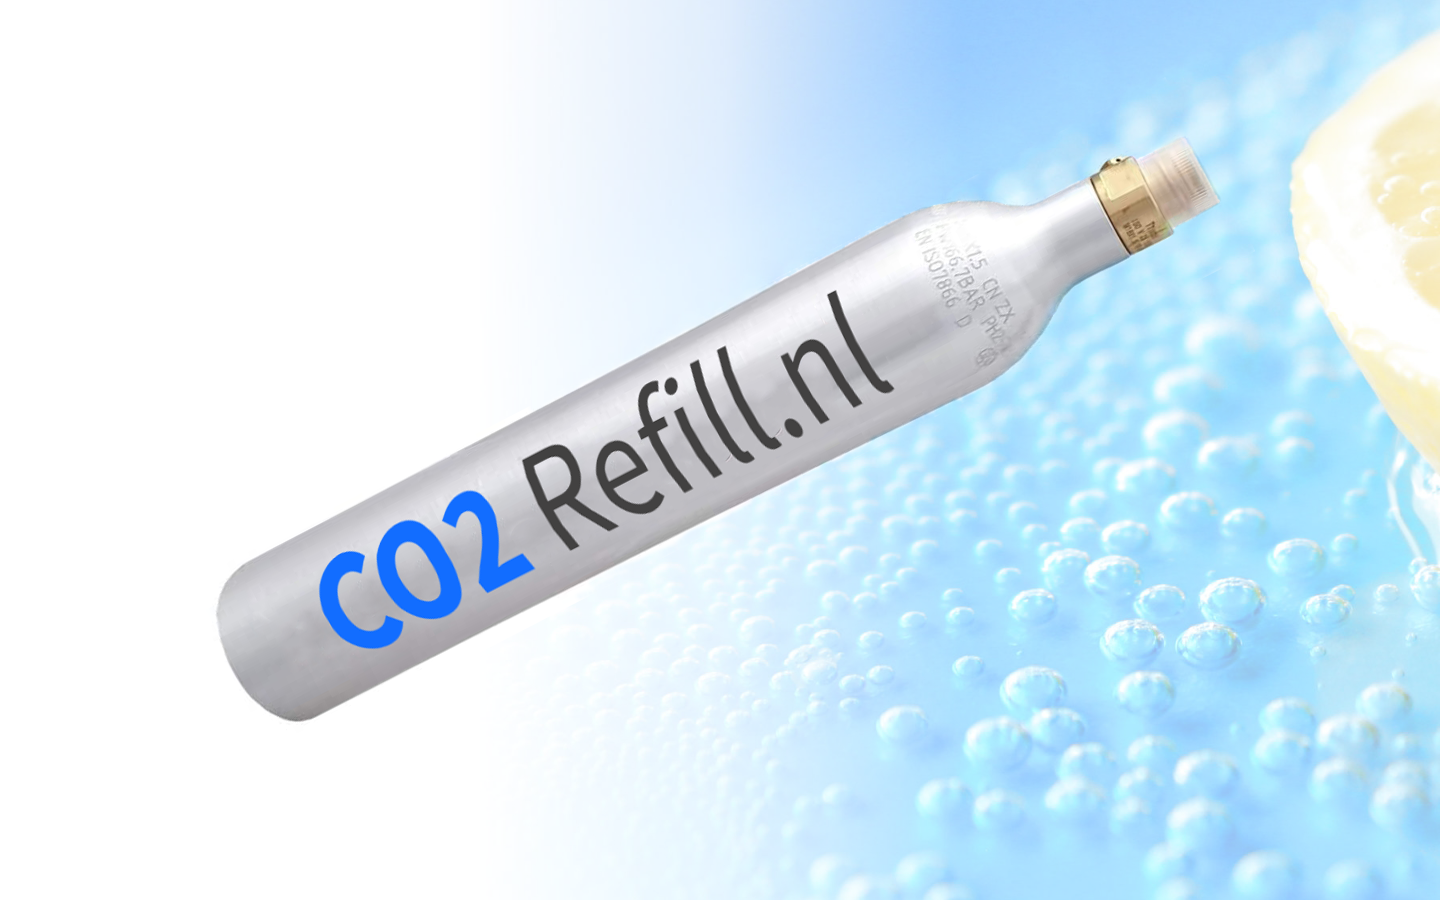 3 CO2 Cilinders incl. RuilBox en retourlabel - CO2 Refill.nl